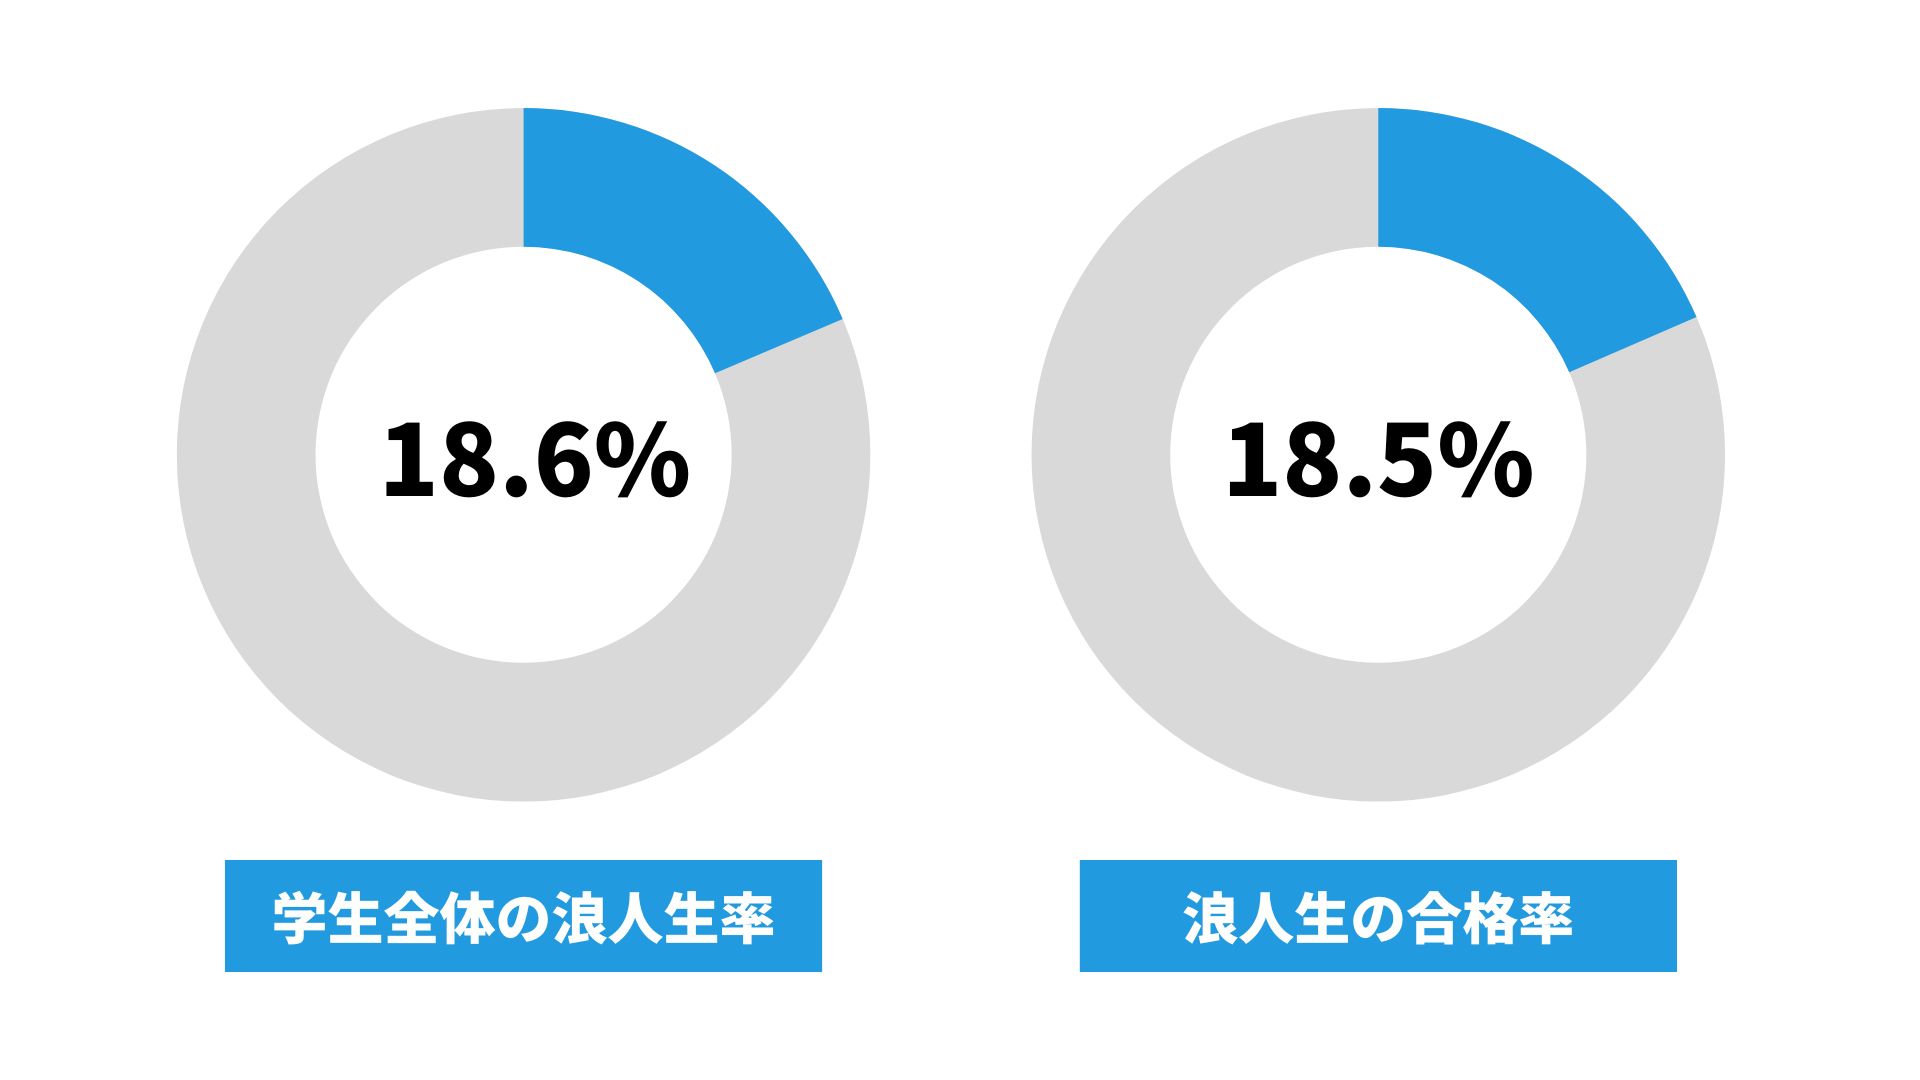 奈良教育大学の浪人生の割合